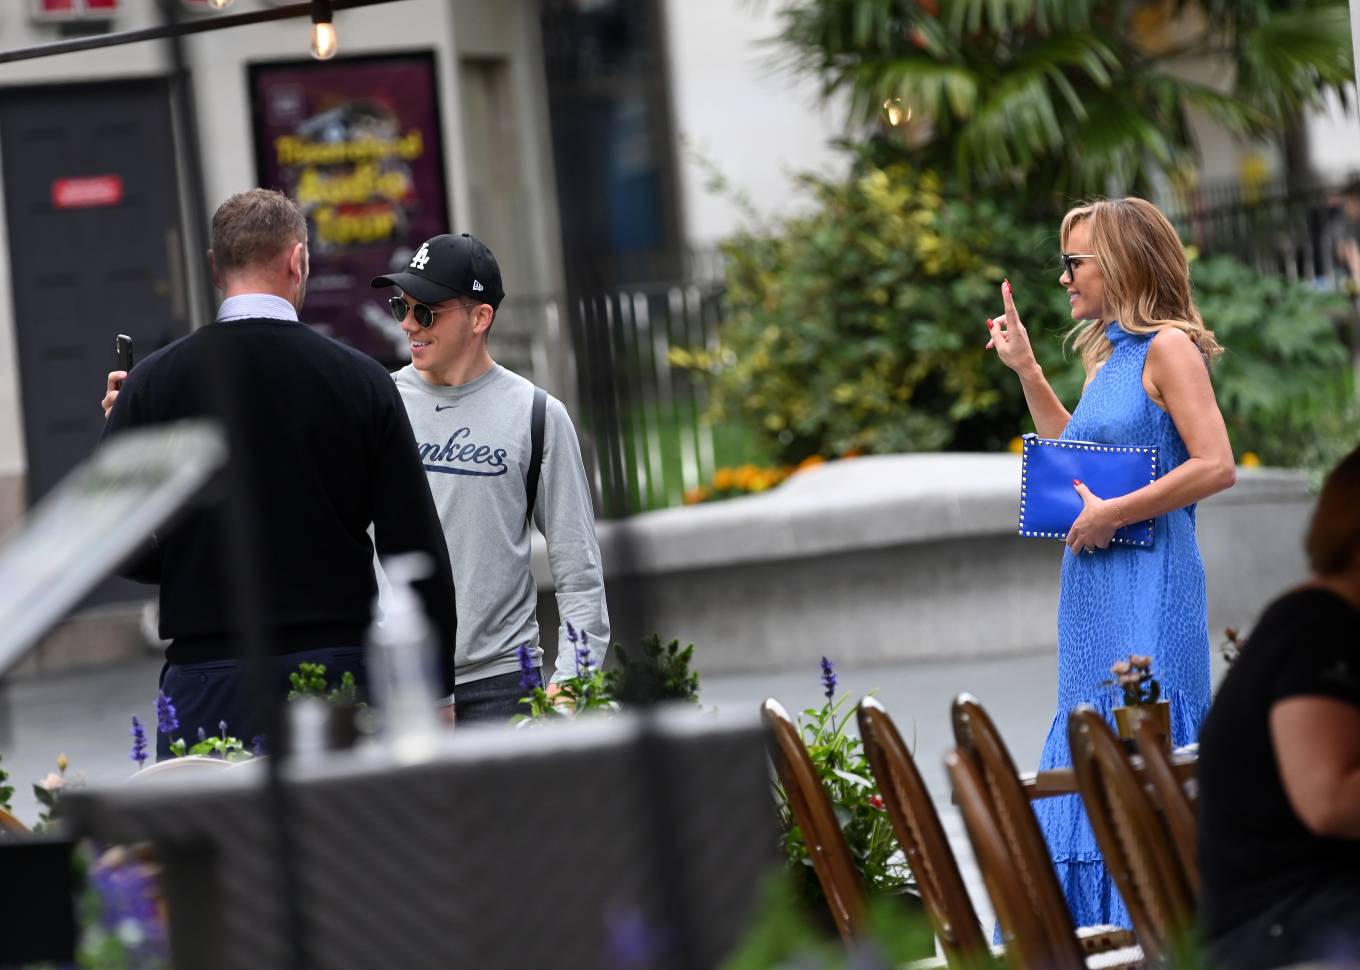 Amanda Holden – In blue dress leaving the Heart Breakfast Show in London